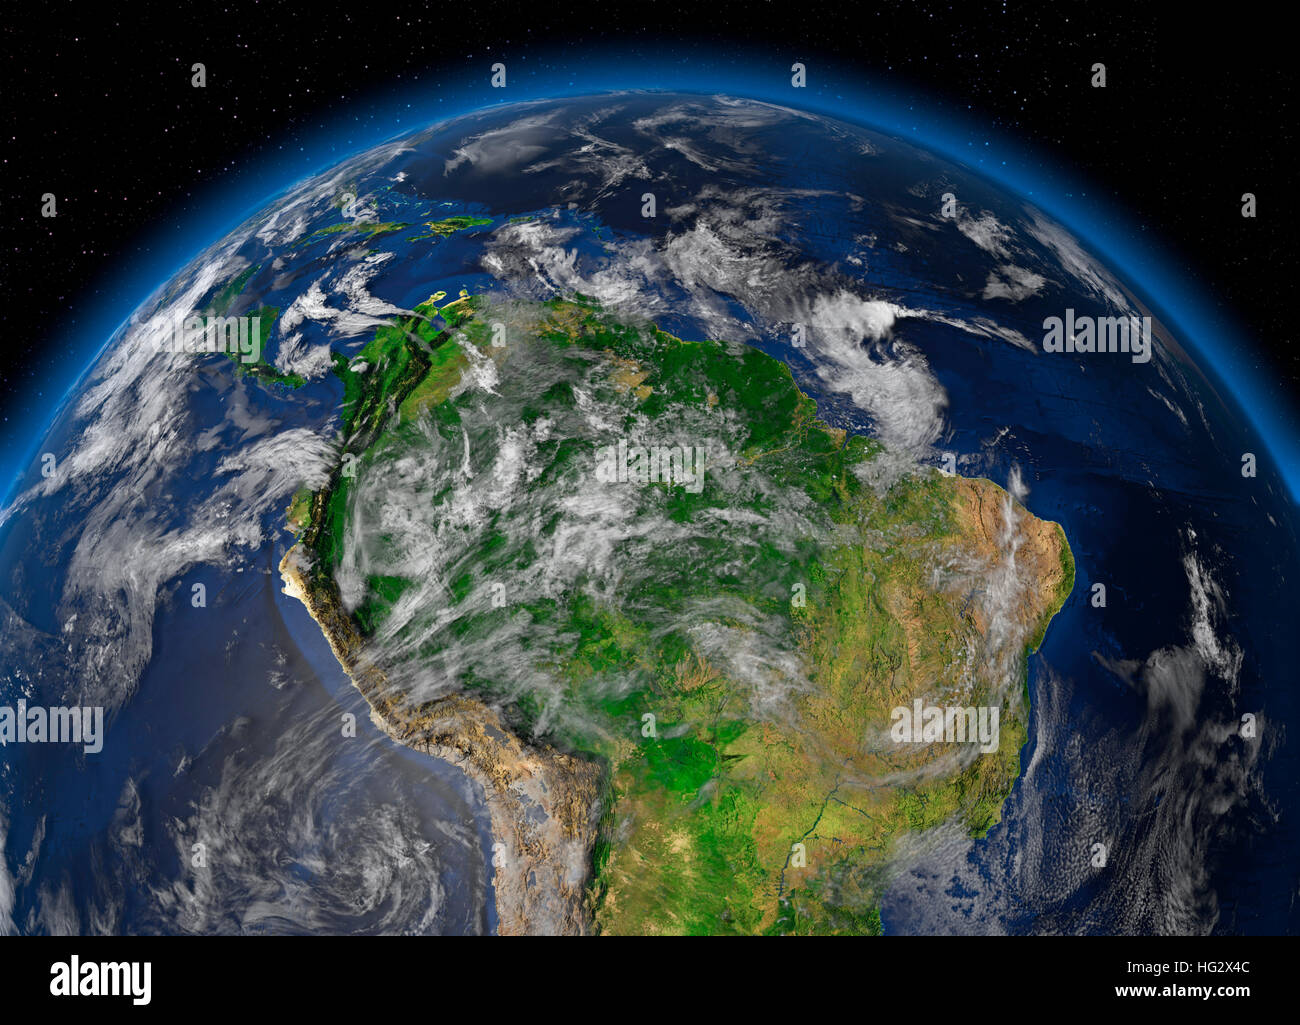 Erde aus dem Weltraum mit Amazonas-Regenwald angesehen. Realistische digitale Illustration einschließlich Reliefkarte Hügel Schattierung des Geländes. Bitte Kredit Nasa. Stockfoto